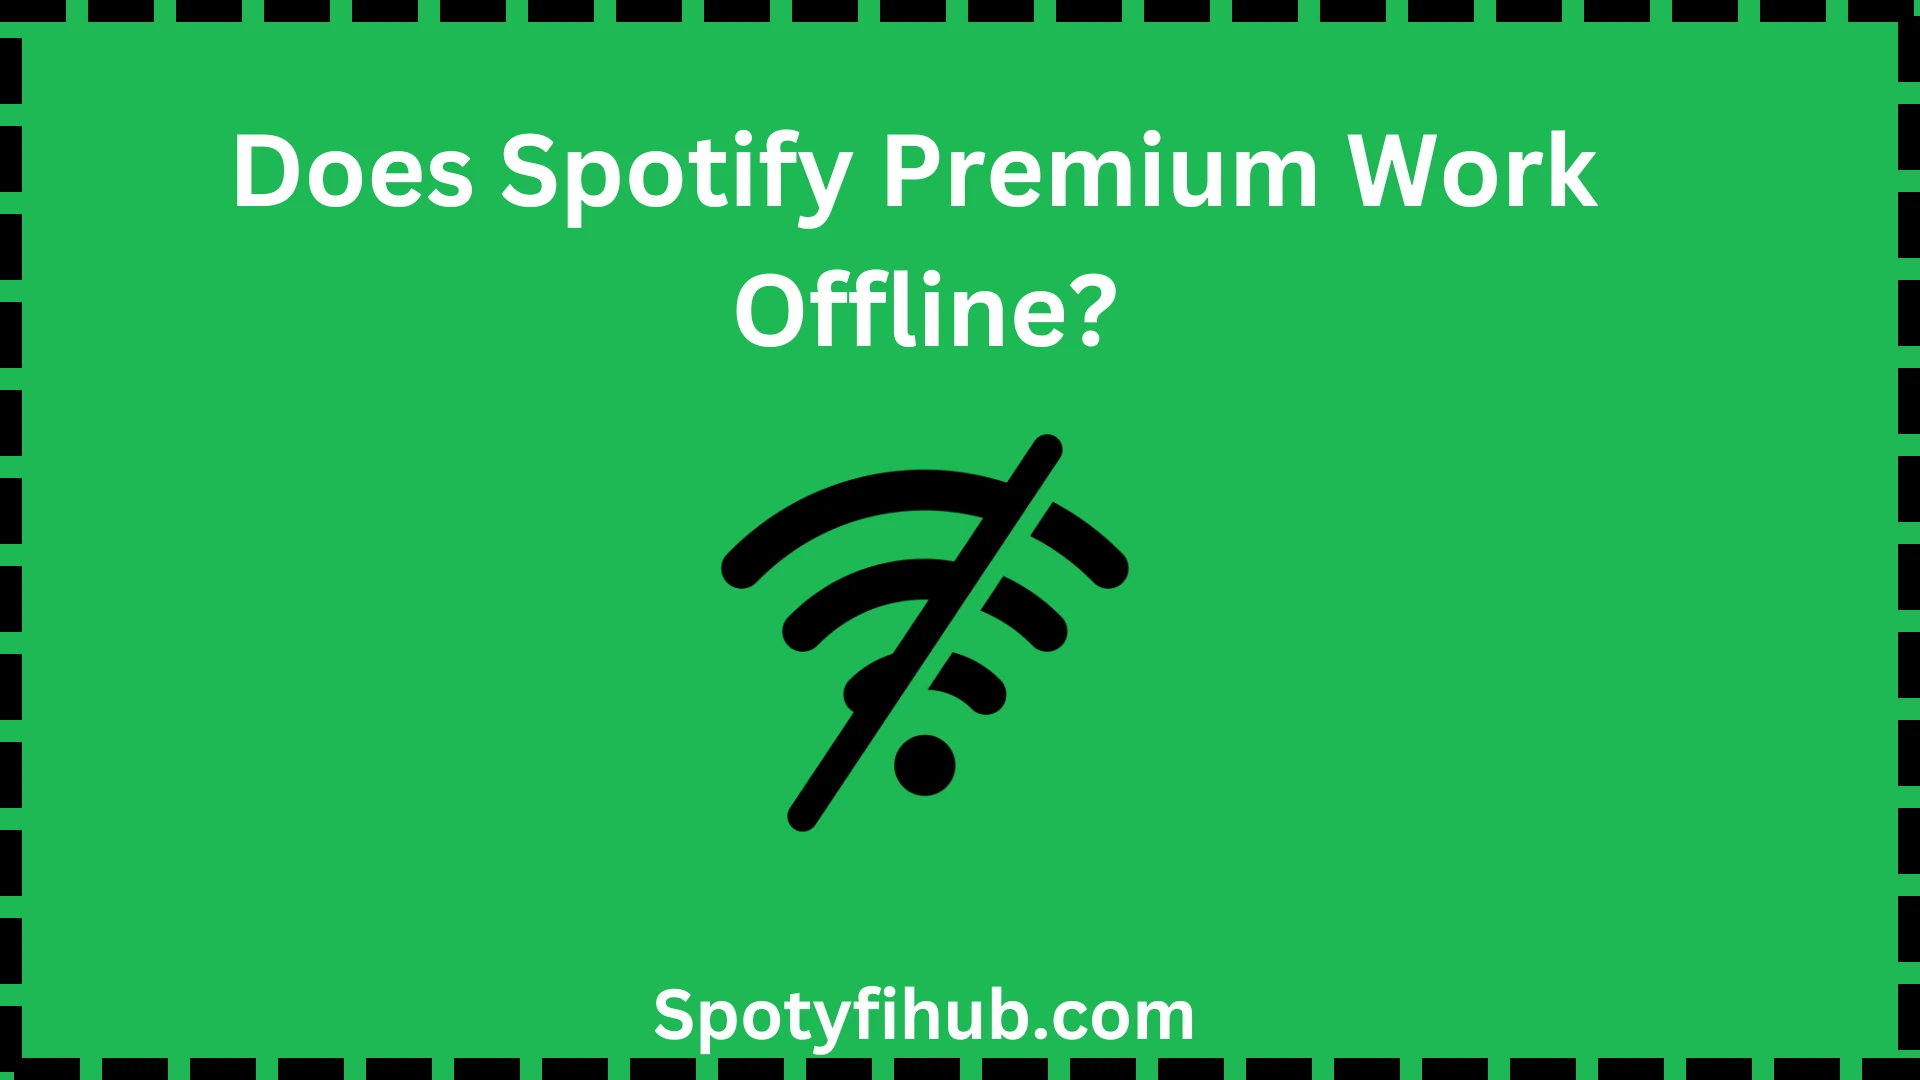 Does Spotify Premium Work Offline